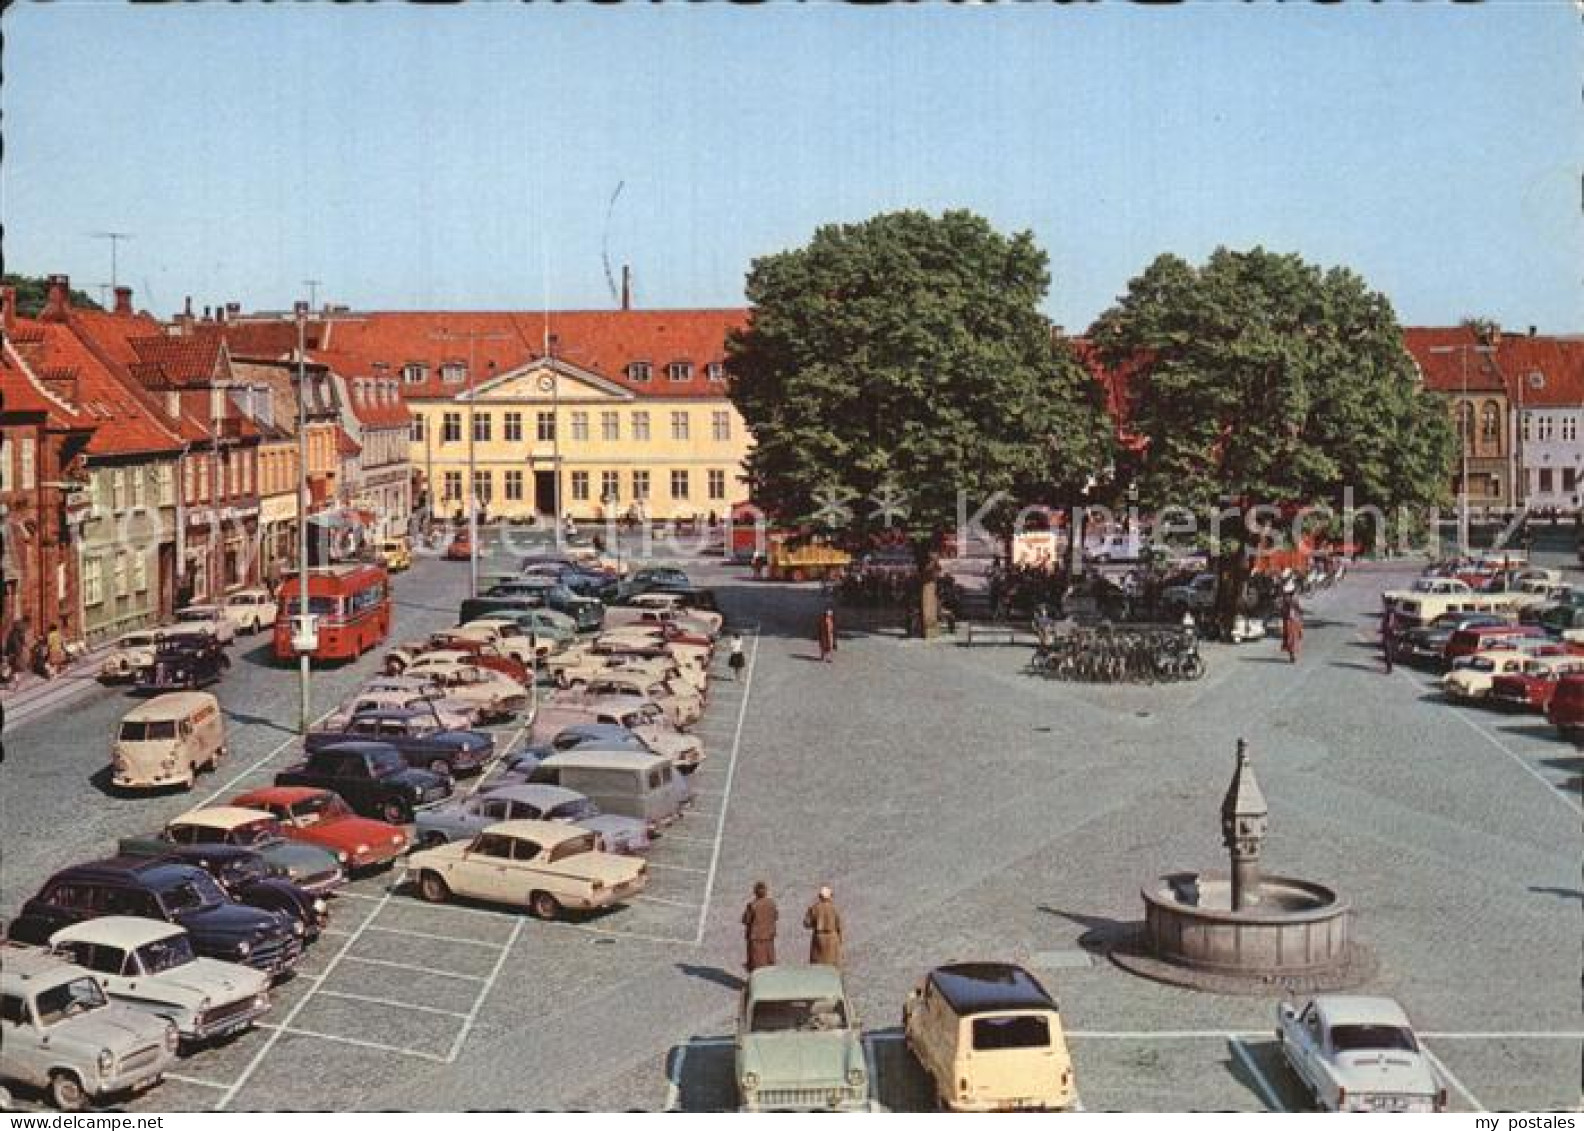 72581973 Koge Marktplatz Koge - Denemarken